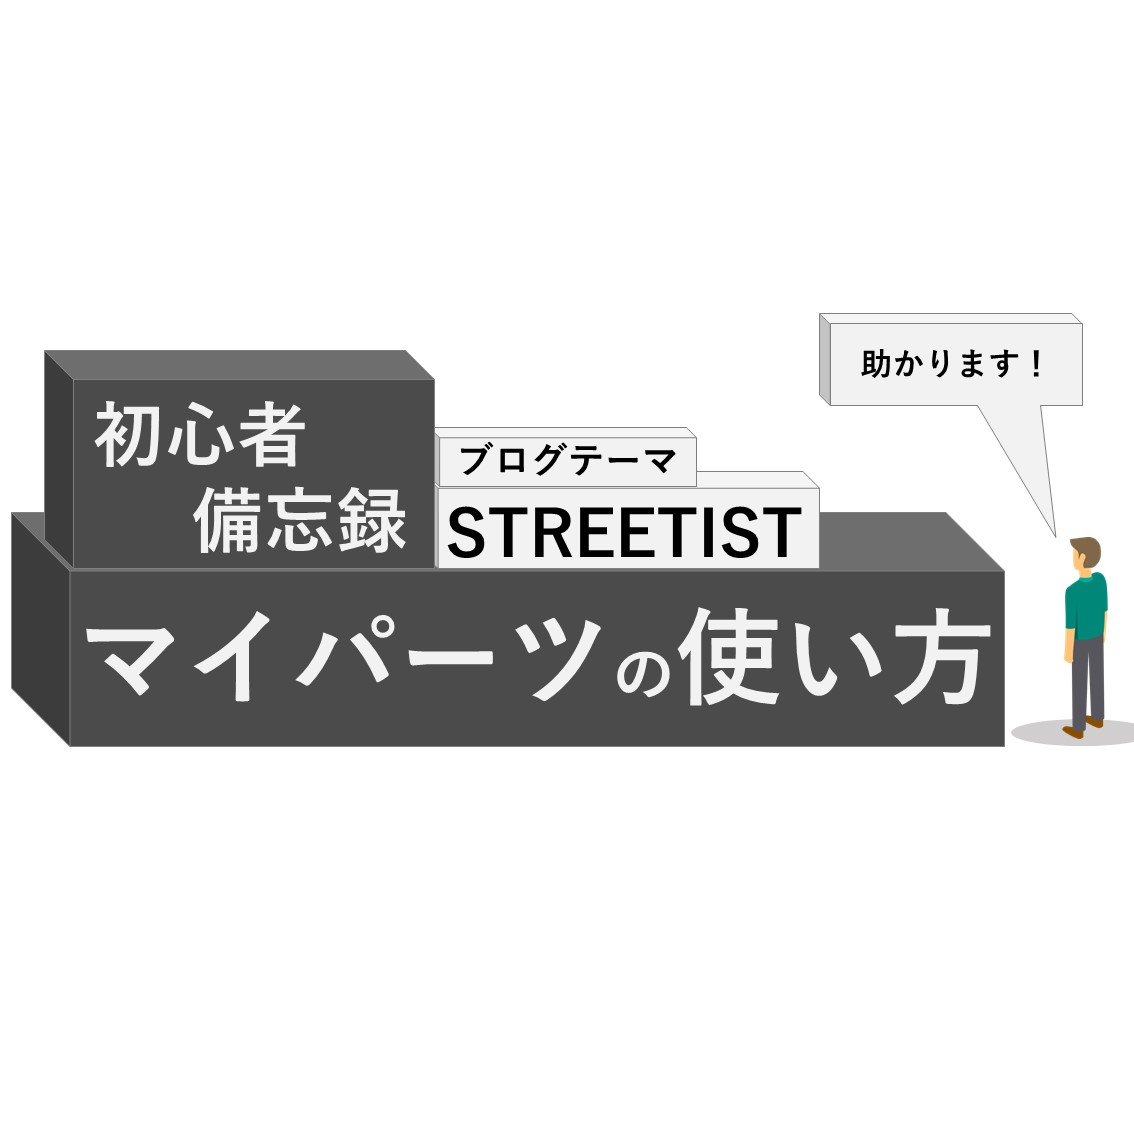 「【初心者のための】STREETIST「マイパーツ」使い方」のアイキャッチ画像